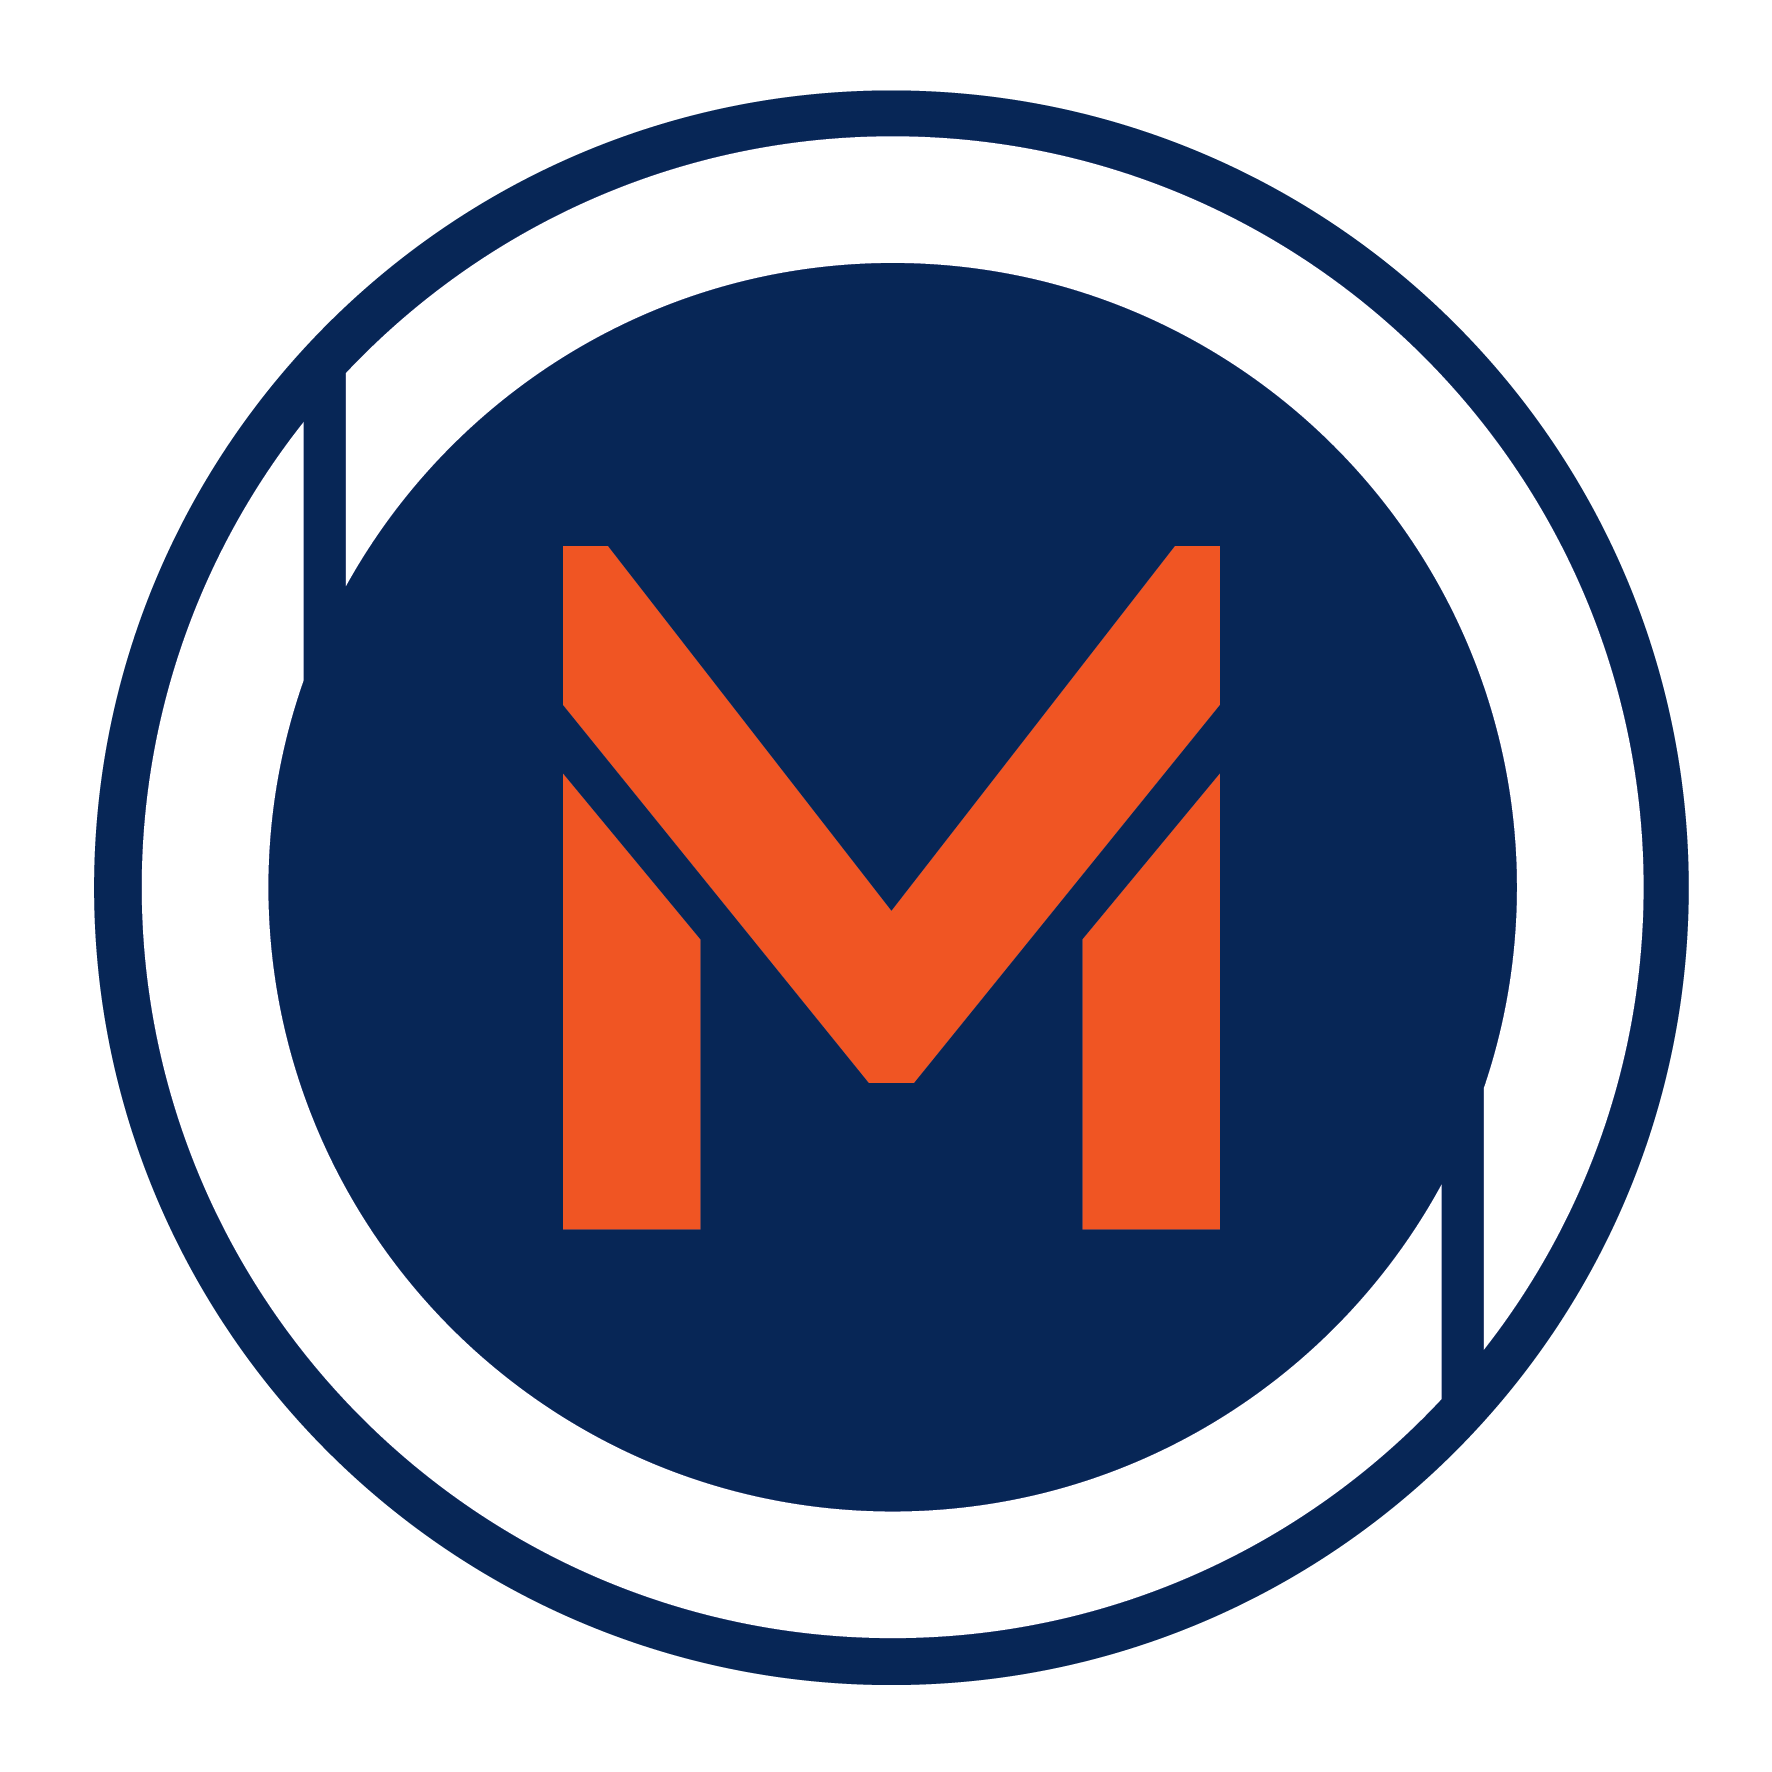 MetroLink Logo White